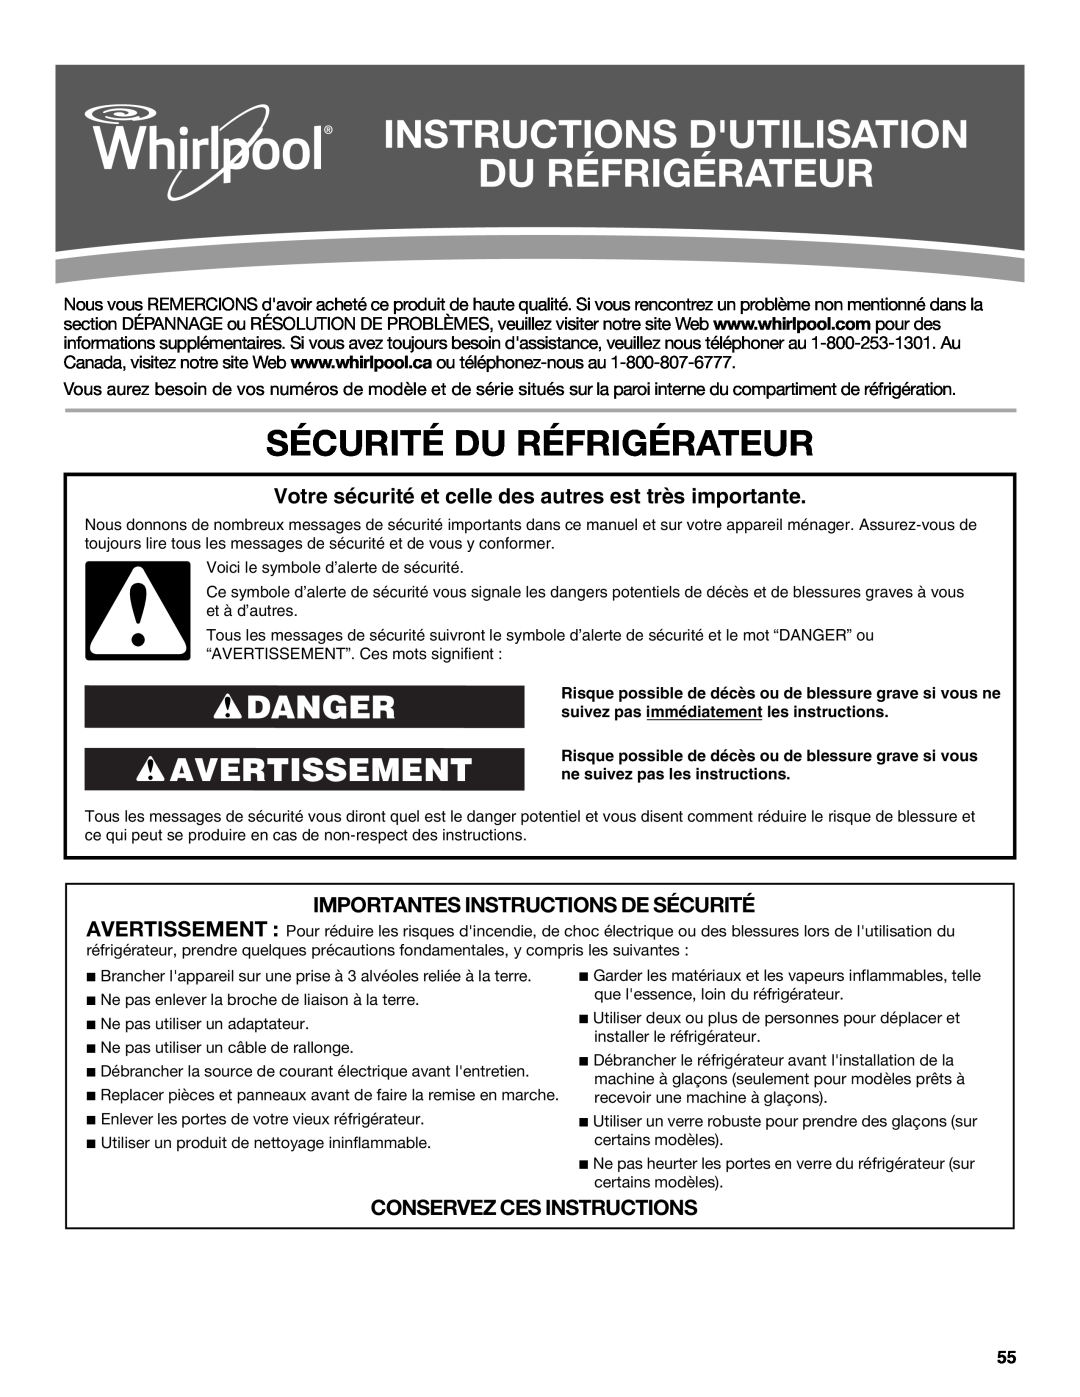 Whirlpool W10632883A Instructions Dutilisation Du Réfrigérateur, Sécurité Du Réfrigérateur, Danger Avertissement 